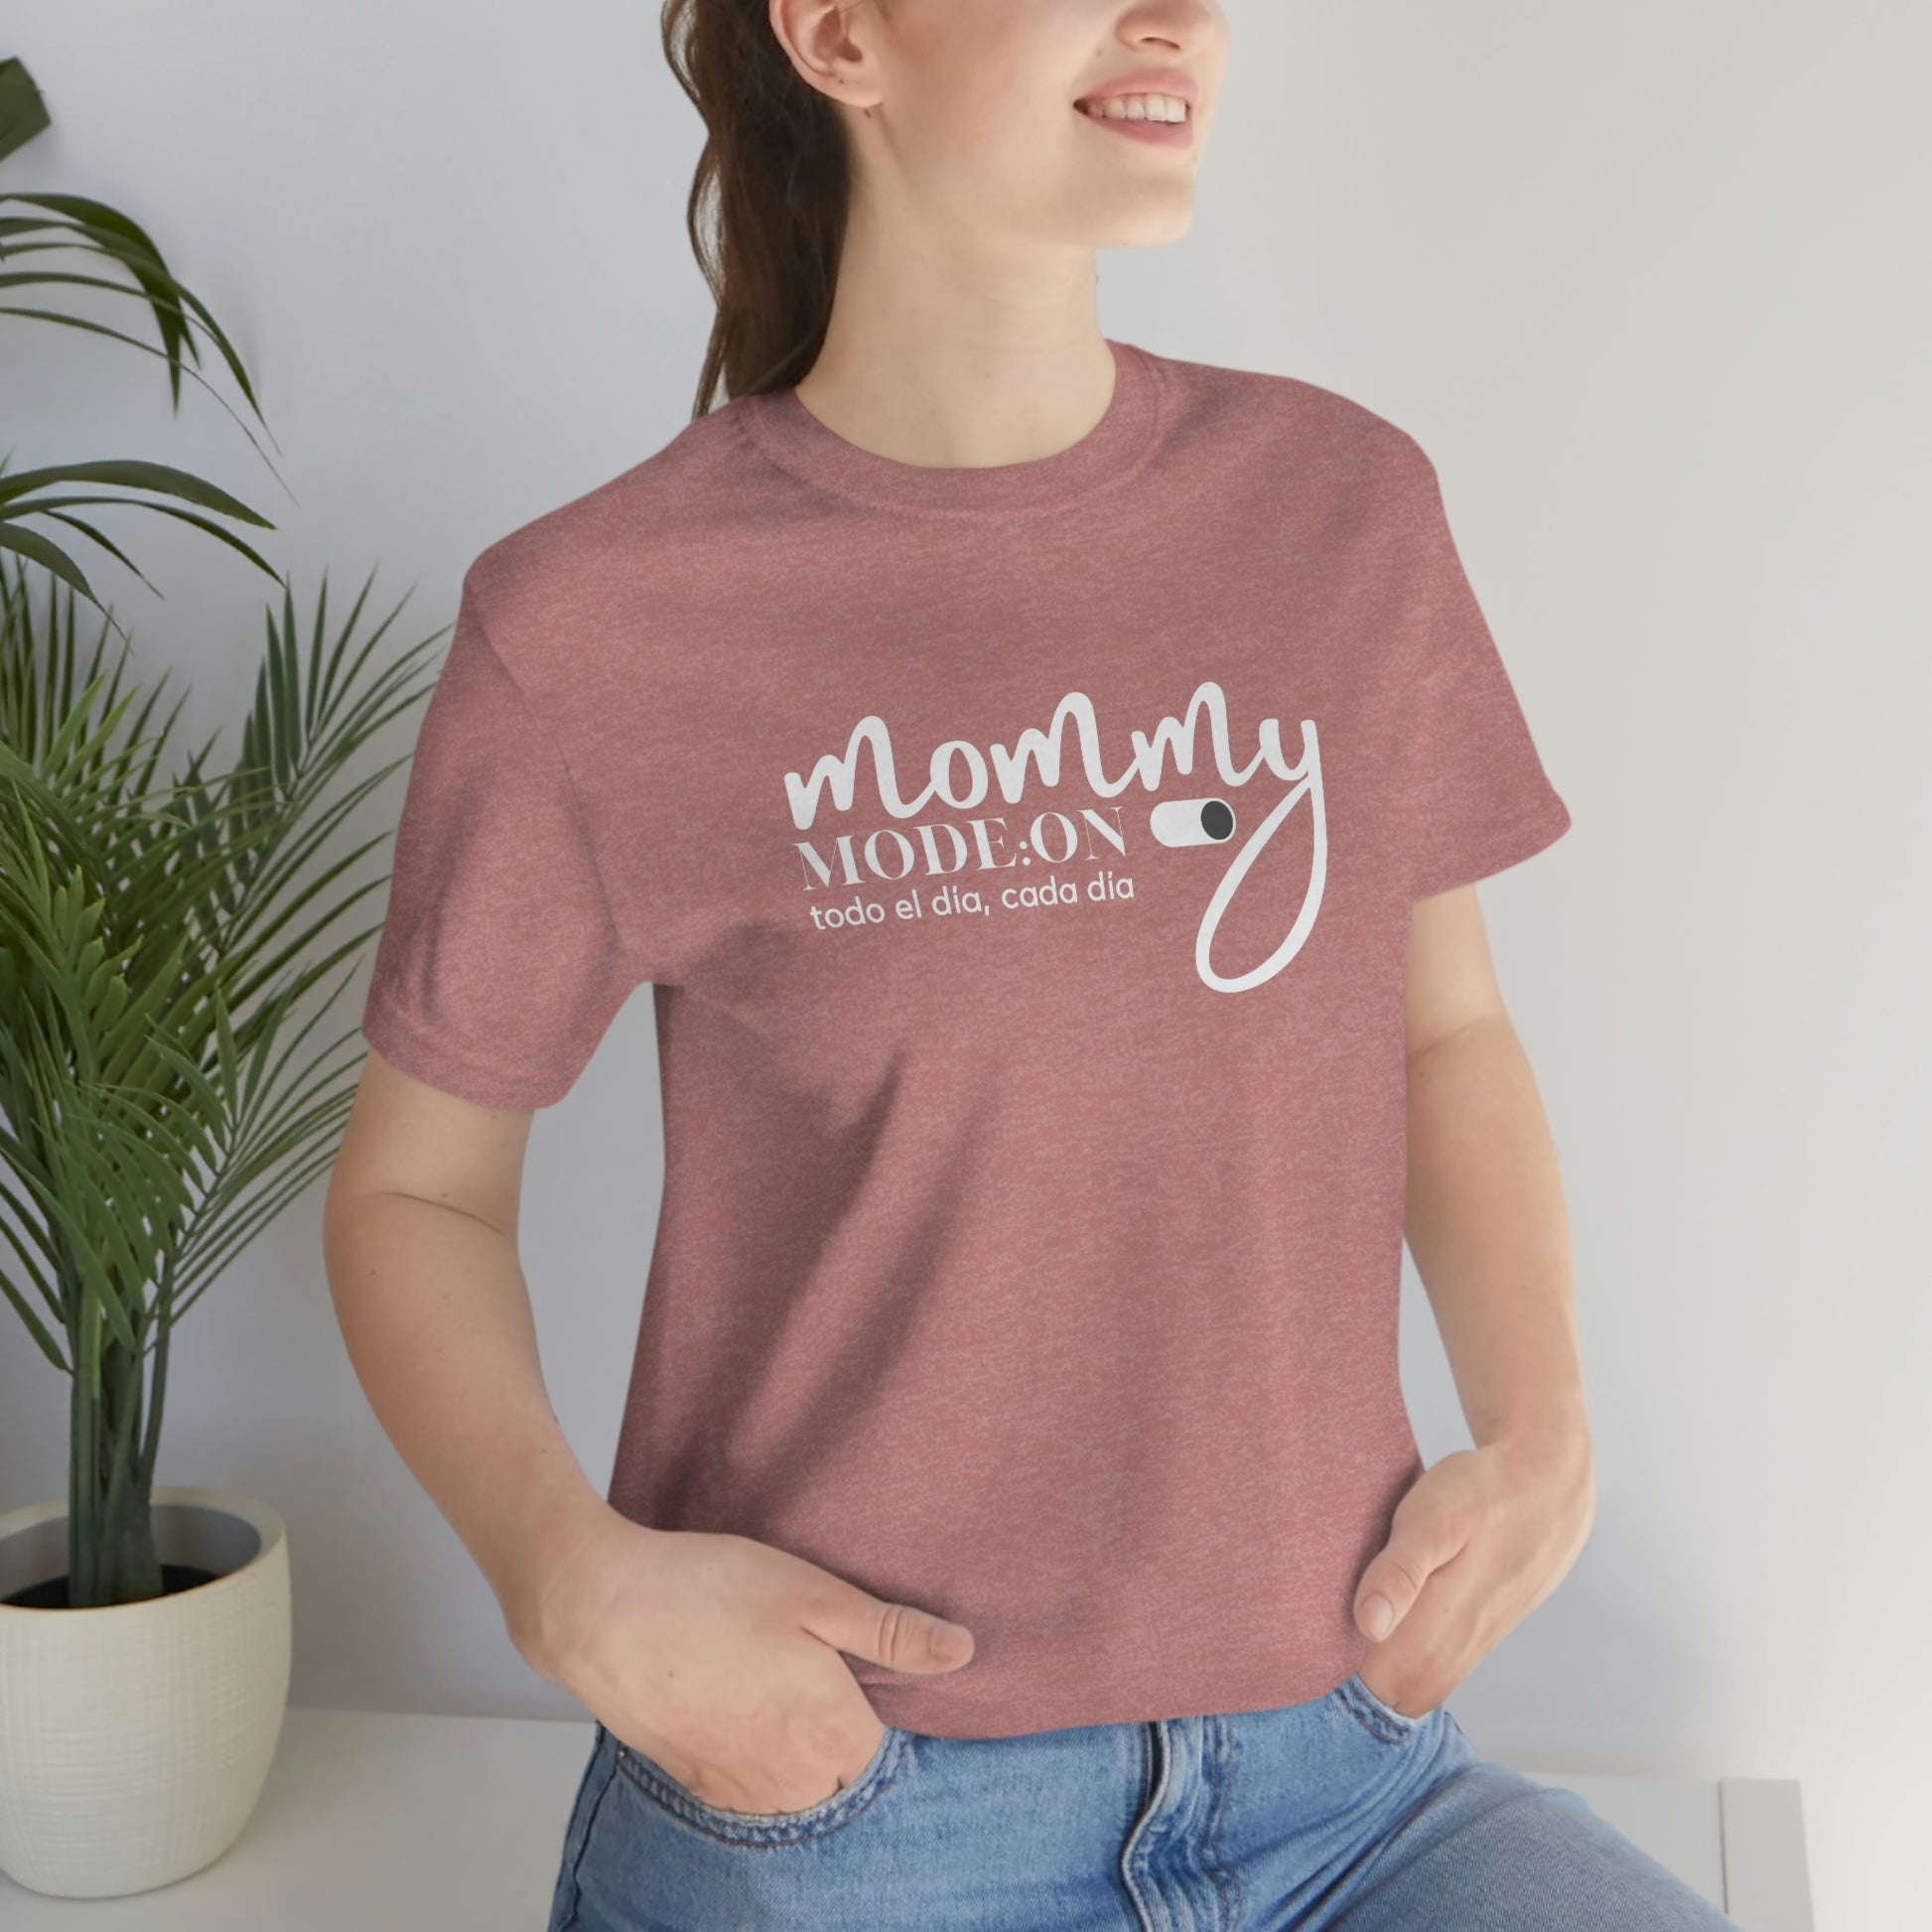 Cuna ropa si puedes T-Shirt con mensaje motivacional para madres, camisa con mensaje posit –  Elite Mommy Design Studio